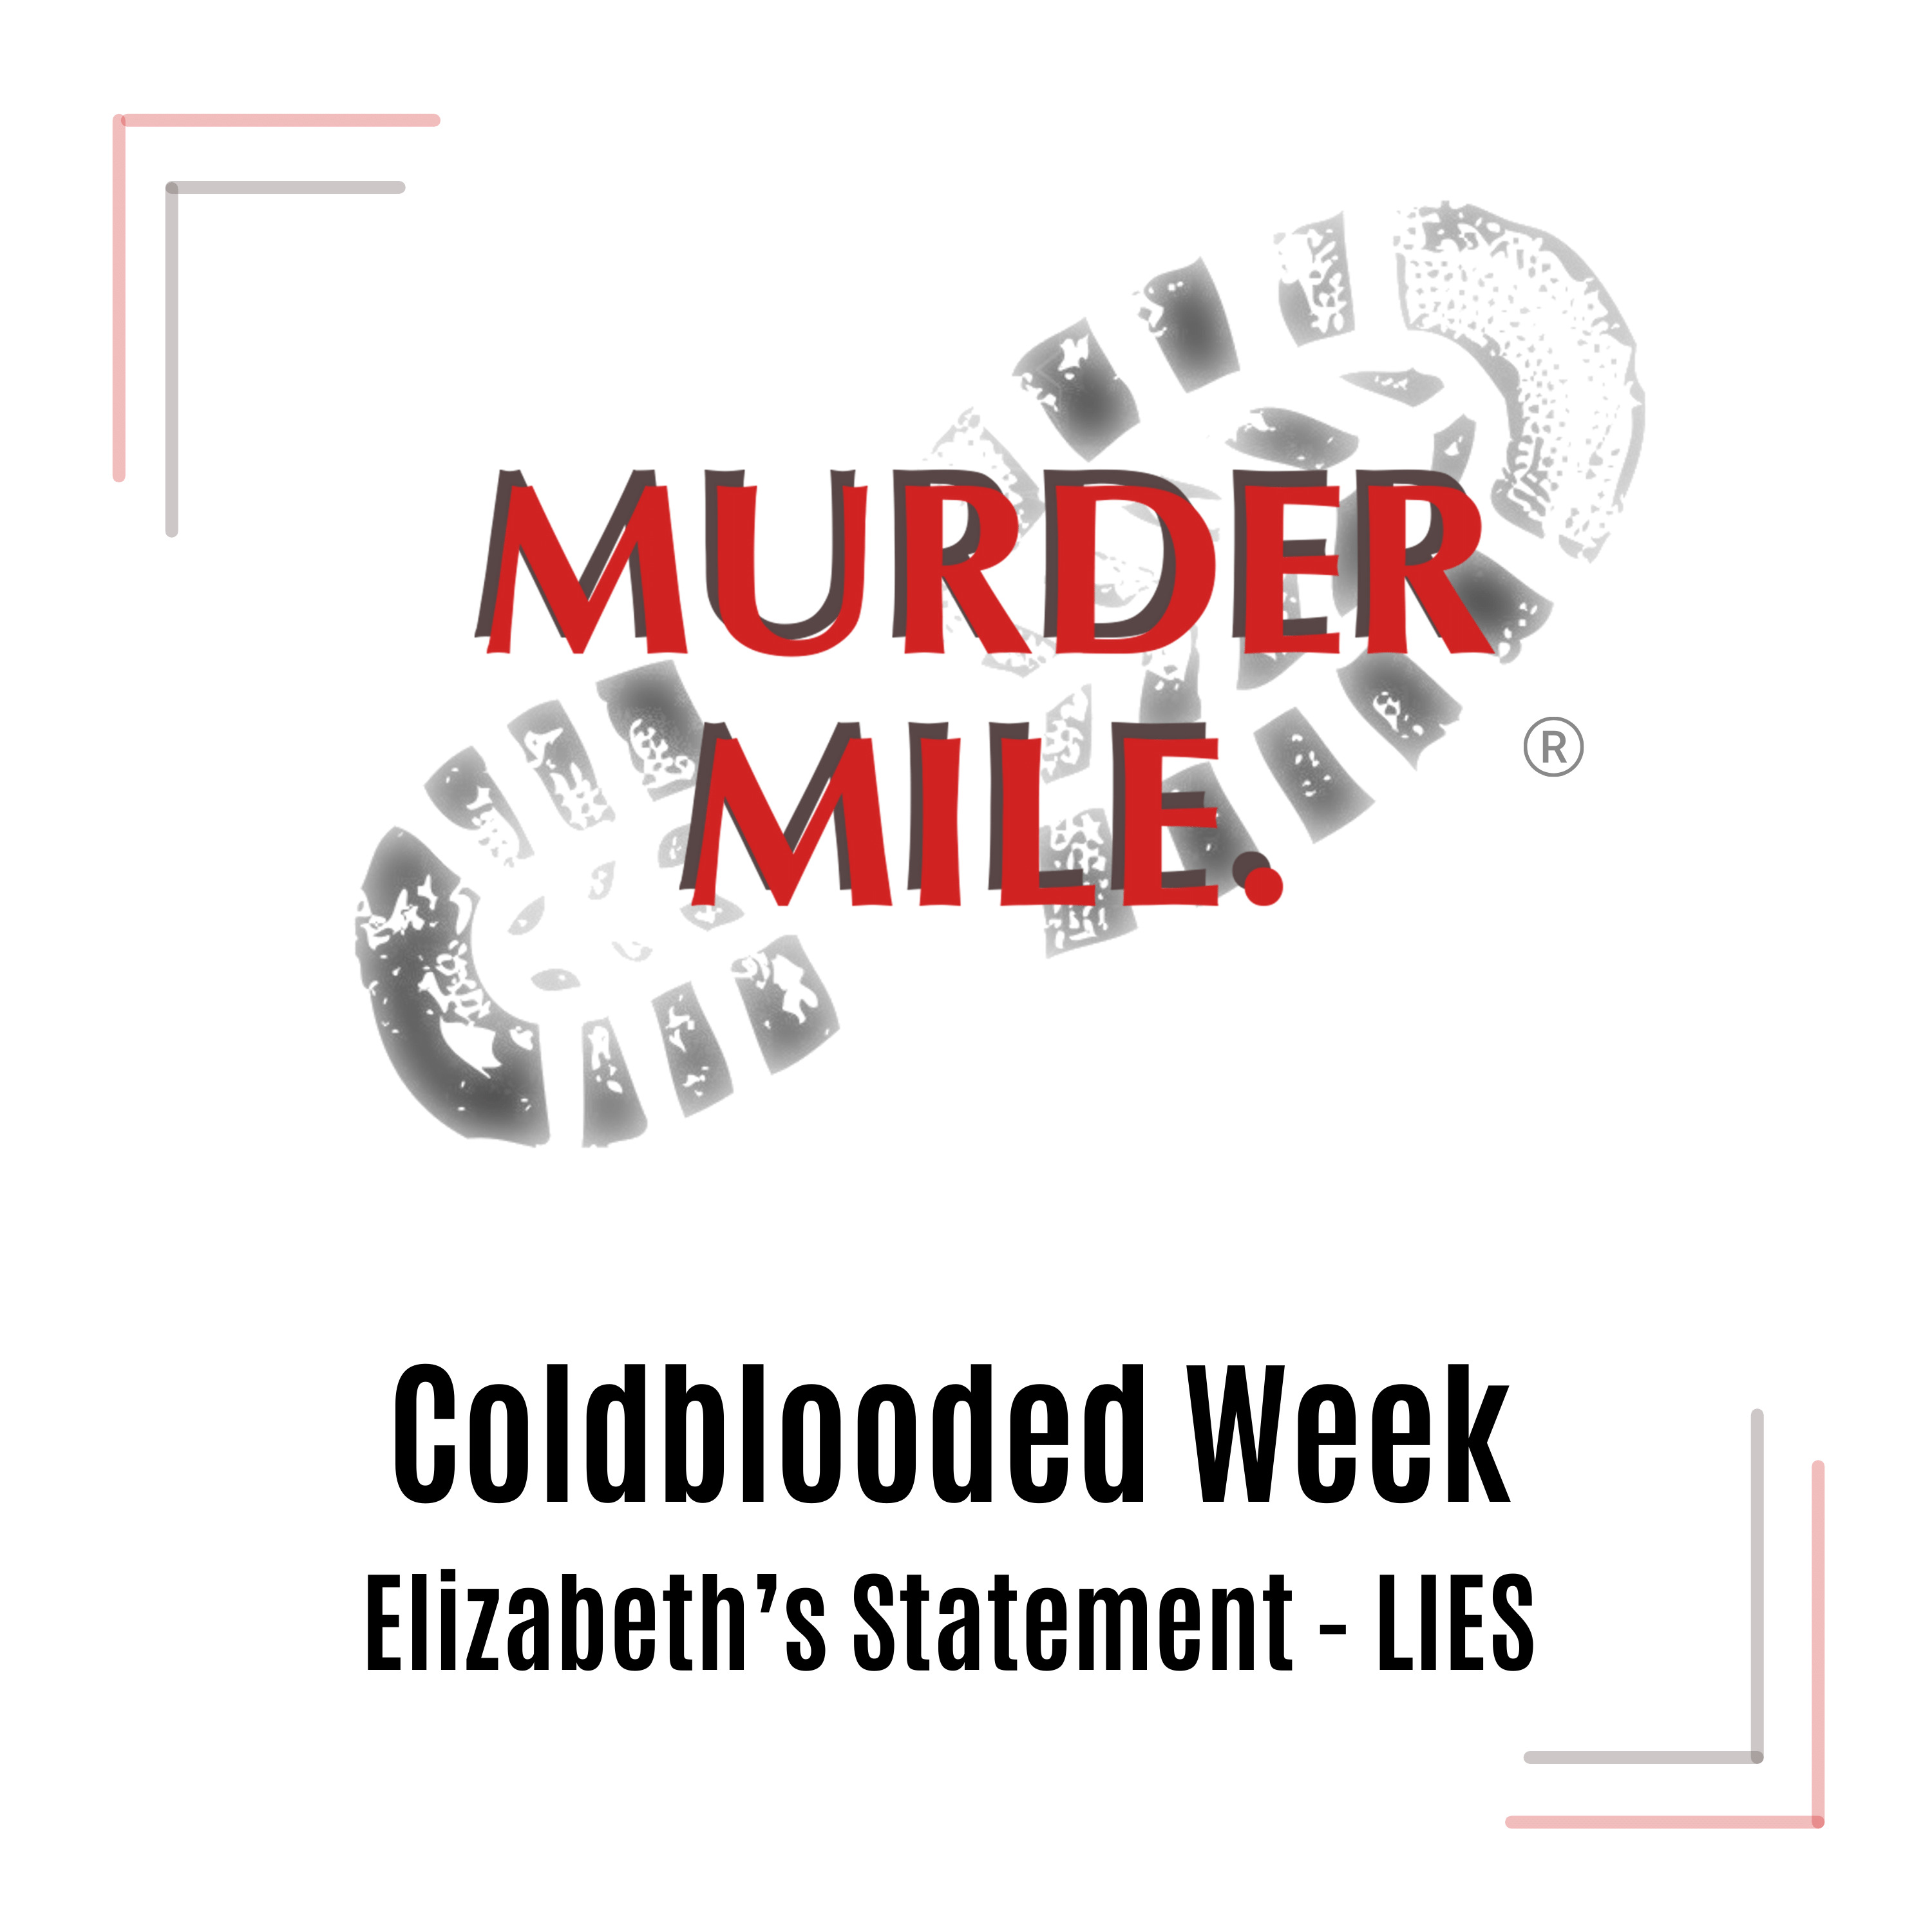 Coldblooded Week - Elizabeth's First Statement - LIES